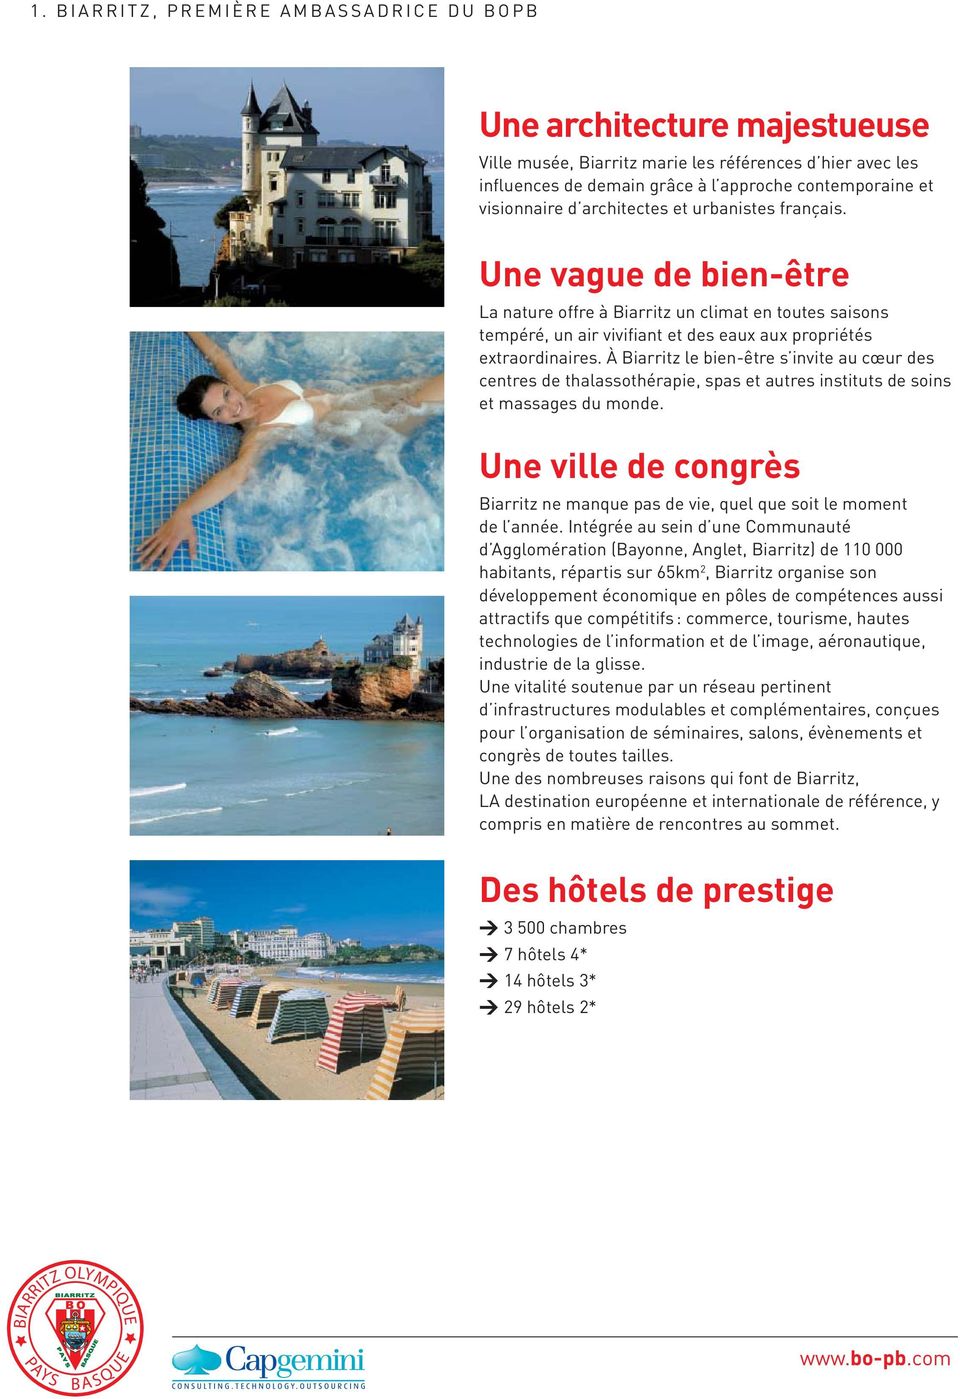 À Biarritz le bien-être s invite au cœur des centres de thalassothérapie, spas et autres instituts de soins et massages du monde.